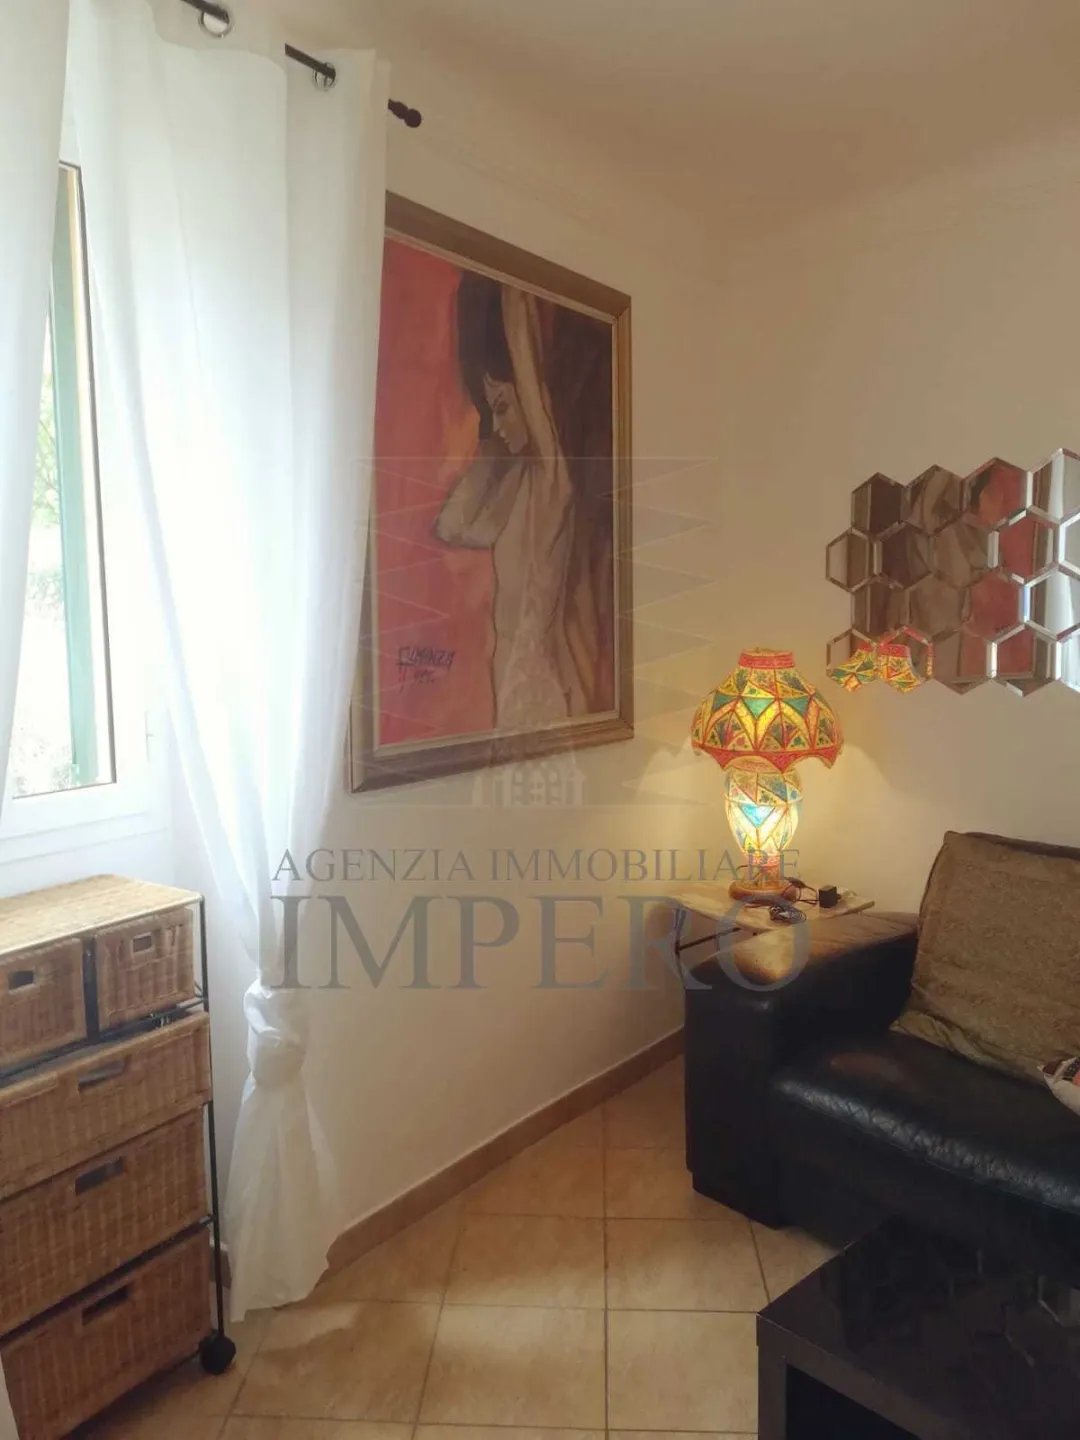 Immagine per Porzione di casa in vendita a Ventimiglia via Ciappin 74